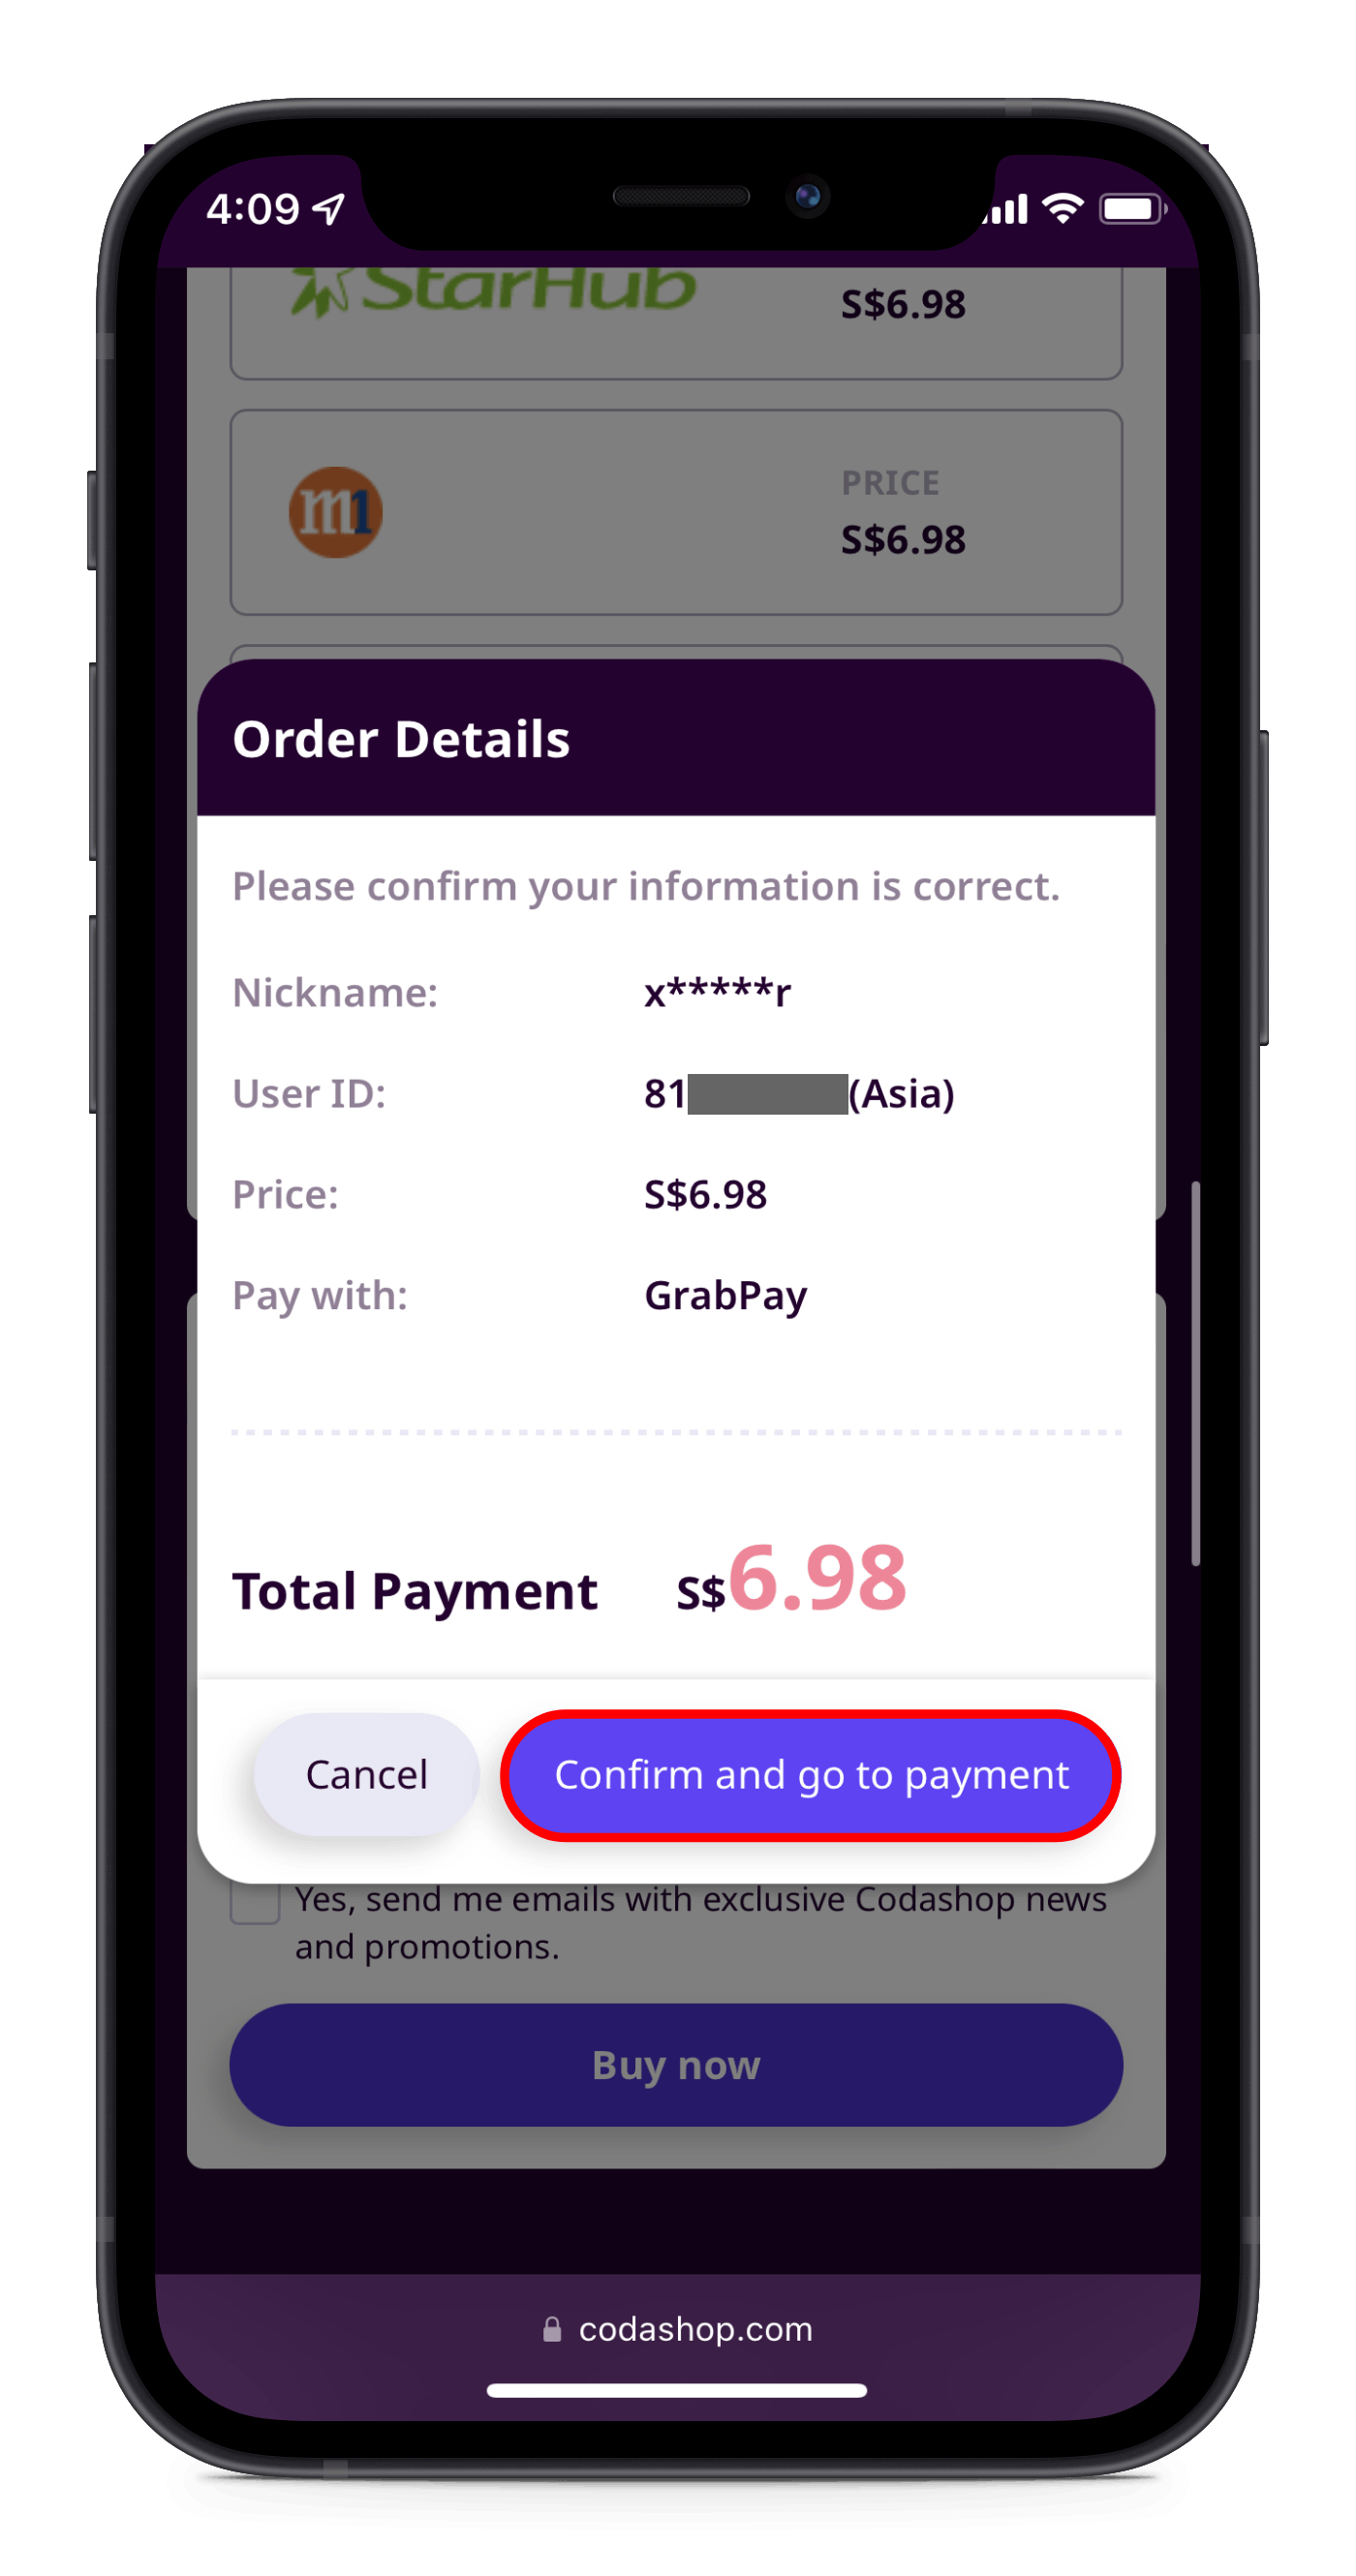 How to Make Payment Using GrabPay – Codashop Singapore